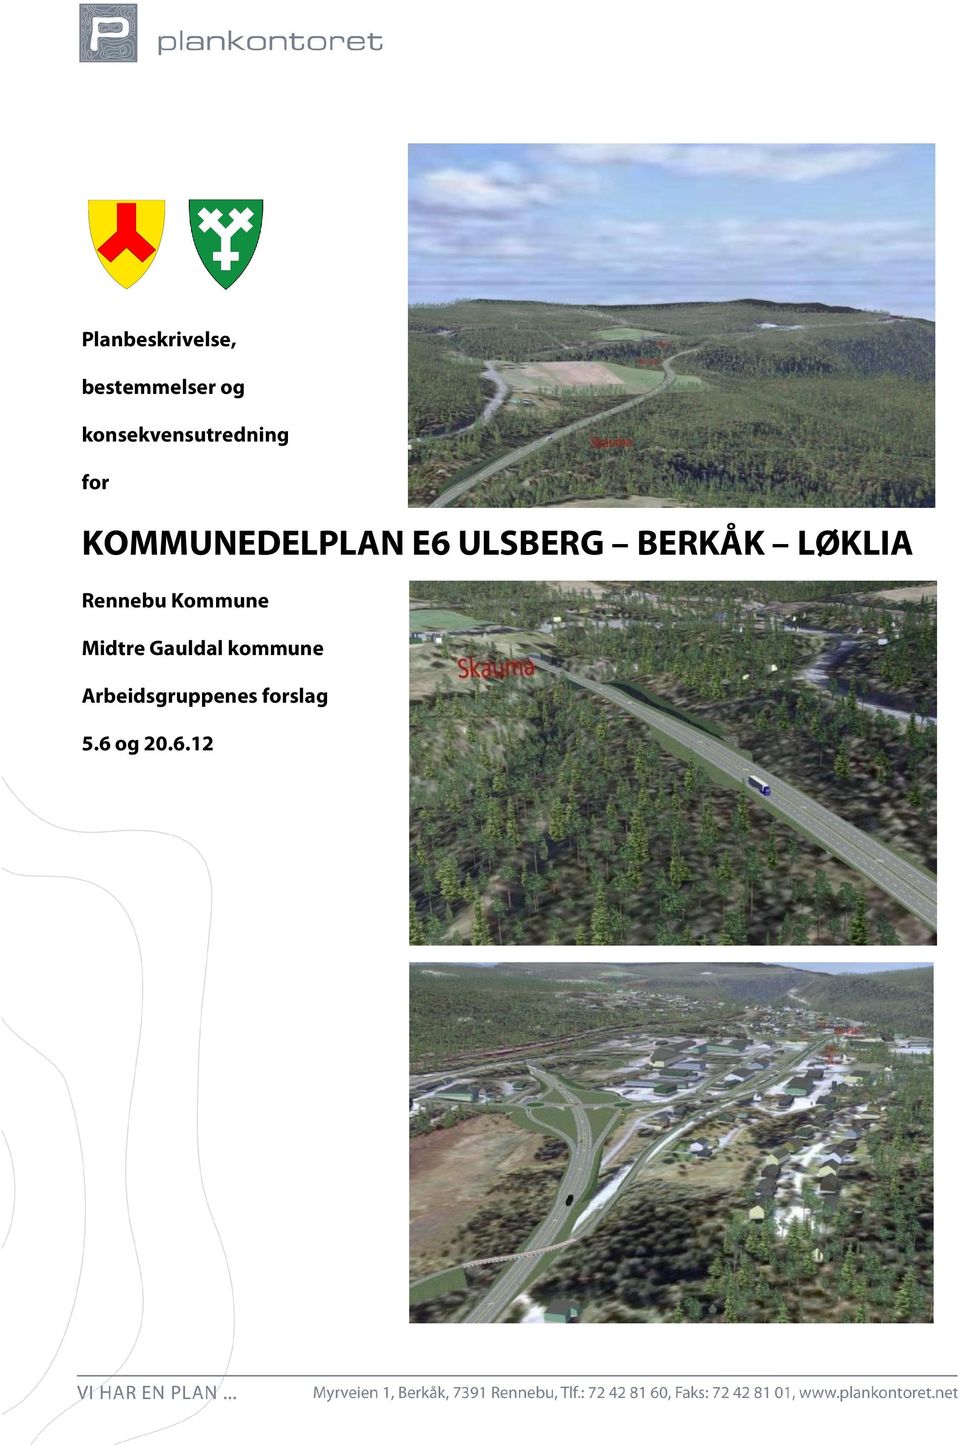 ULSBERG BERKÅK LØKLIA Rennebu Kommune